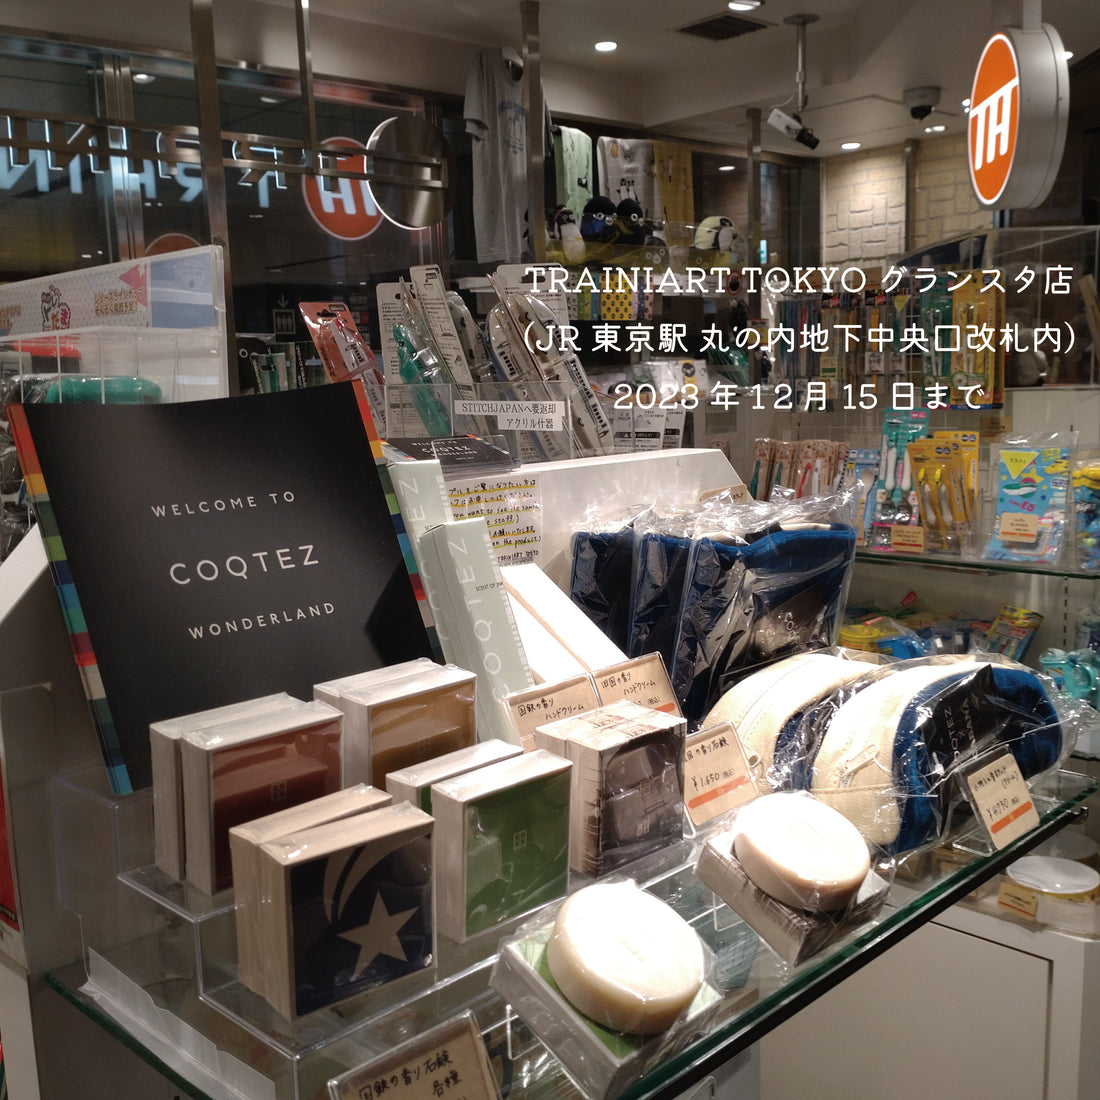 COQTEZ アイテムが TRAINIART TOKYO グランスタ店にて店頭販売中です